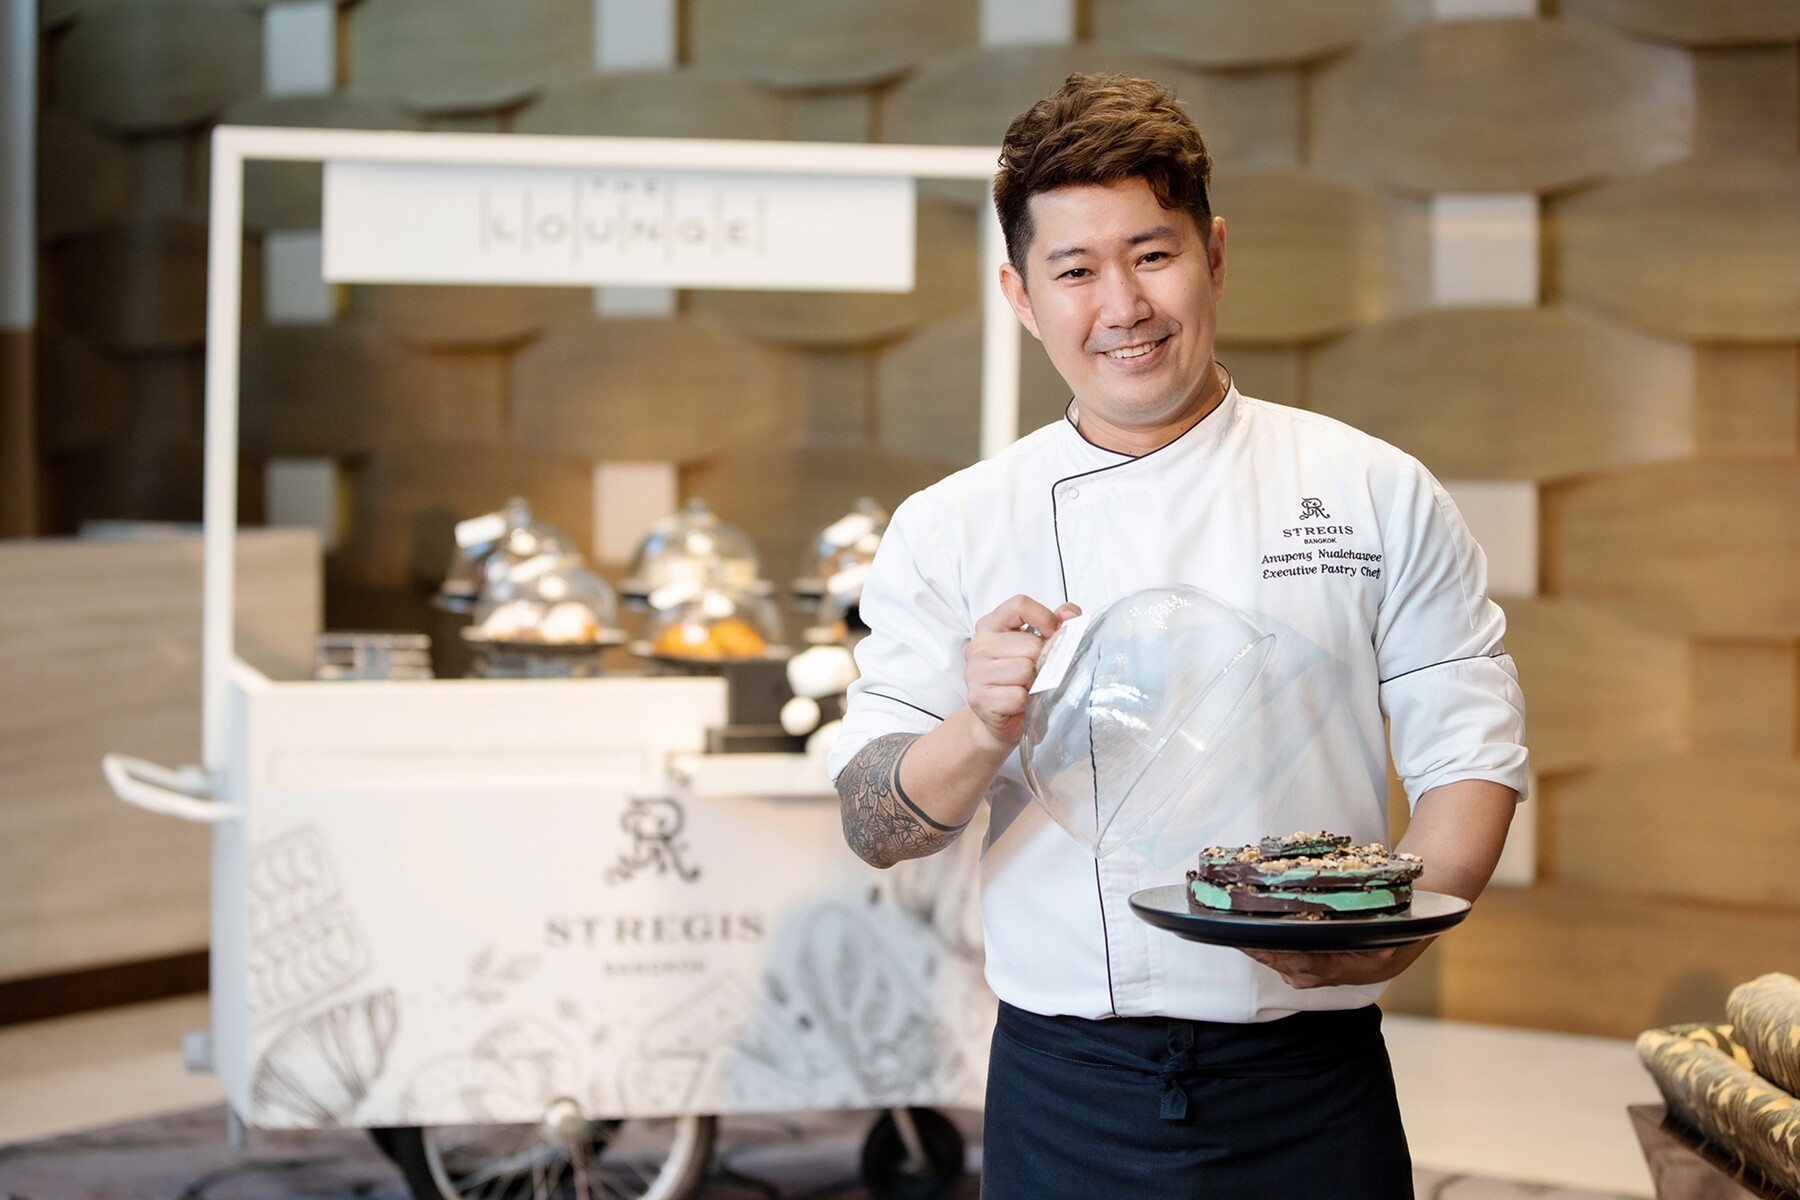 เดอะ เซนต์ รีจิส กรุงเทพฯ นำเสนอคลาสสอนทำช็อกโกแลต ณ เดอะ เลาจน์ โดยเชฟเอ๋ อนุพงษ์ รองชนะเลิศอันดับหนึ่ง รายการ Top Chef Thailand ขนมหวาน